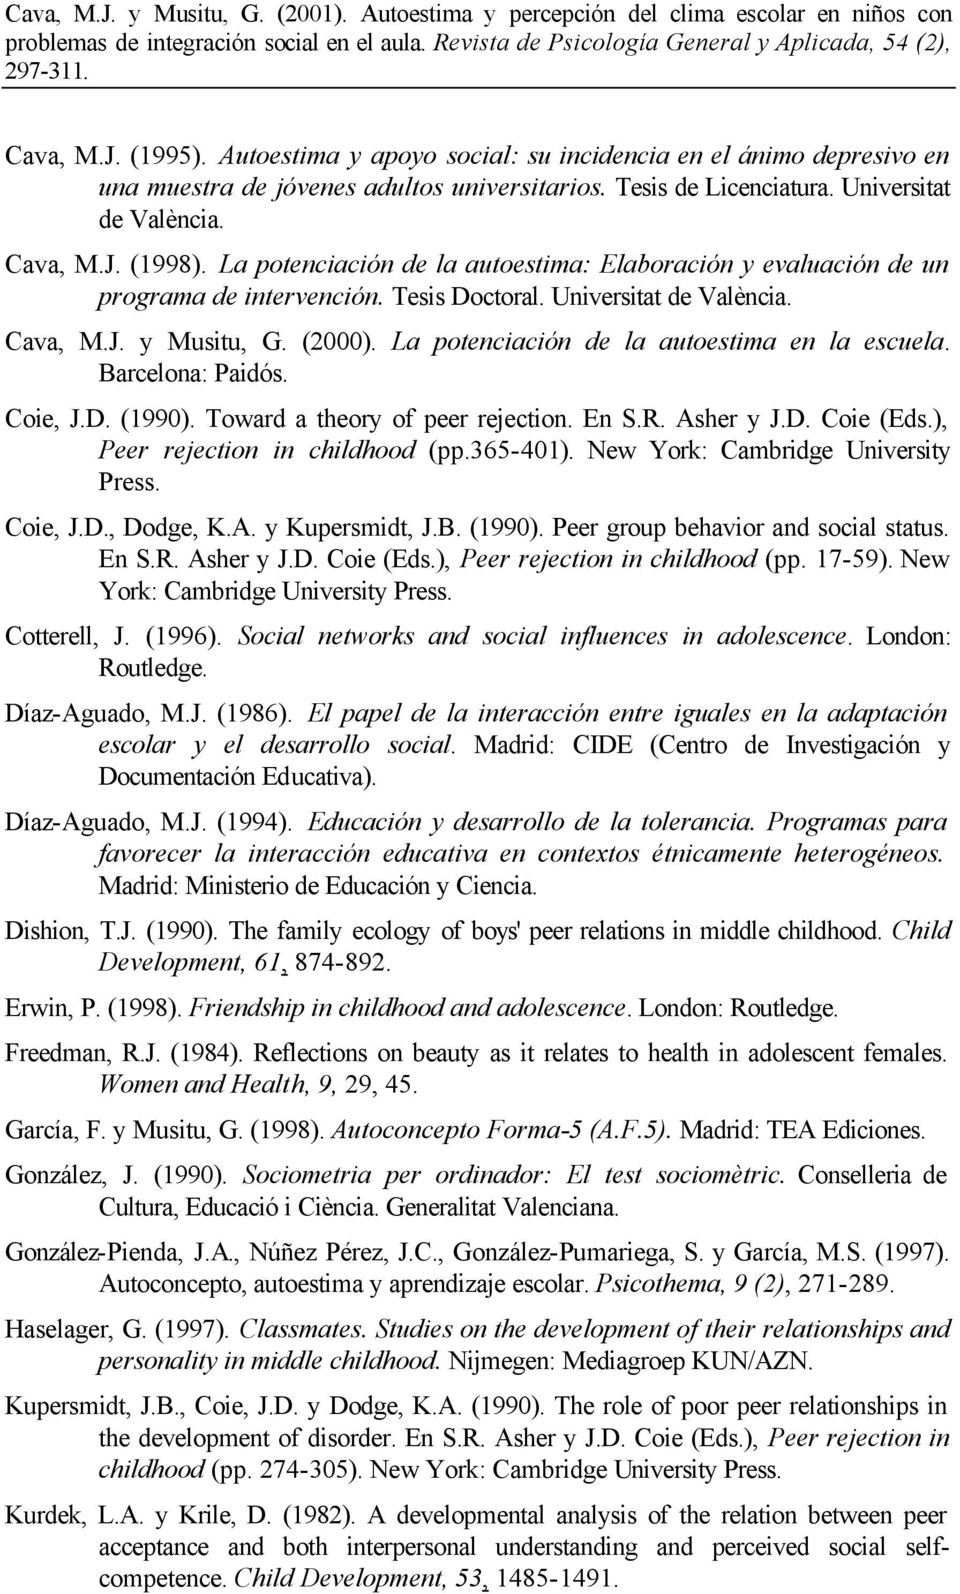 La potenciación de la autoestima en la escuela. Barcelona: Paidós. Coie, J.D. (1990). Toward a theory of peer rejection. En S.R. Asher y J.D. Coie (Eds.), Peer rejection in childhood (pp.365-401).